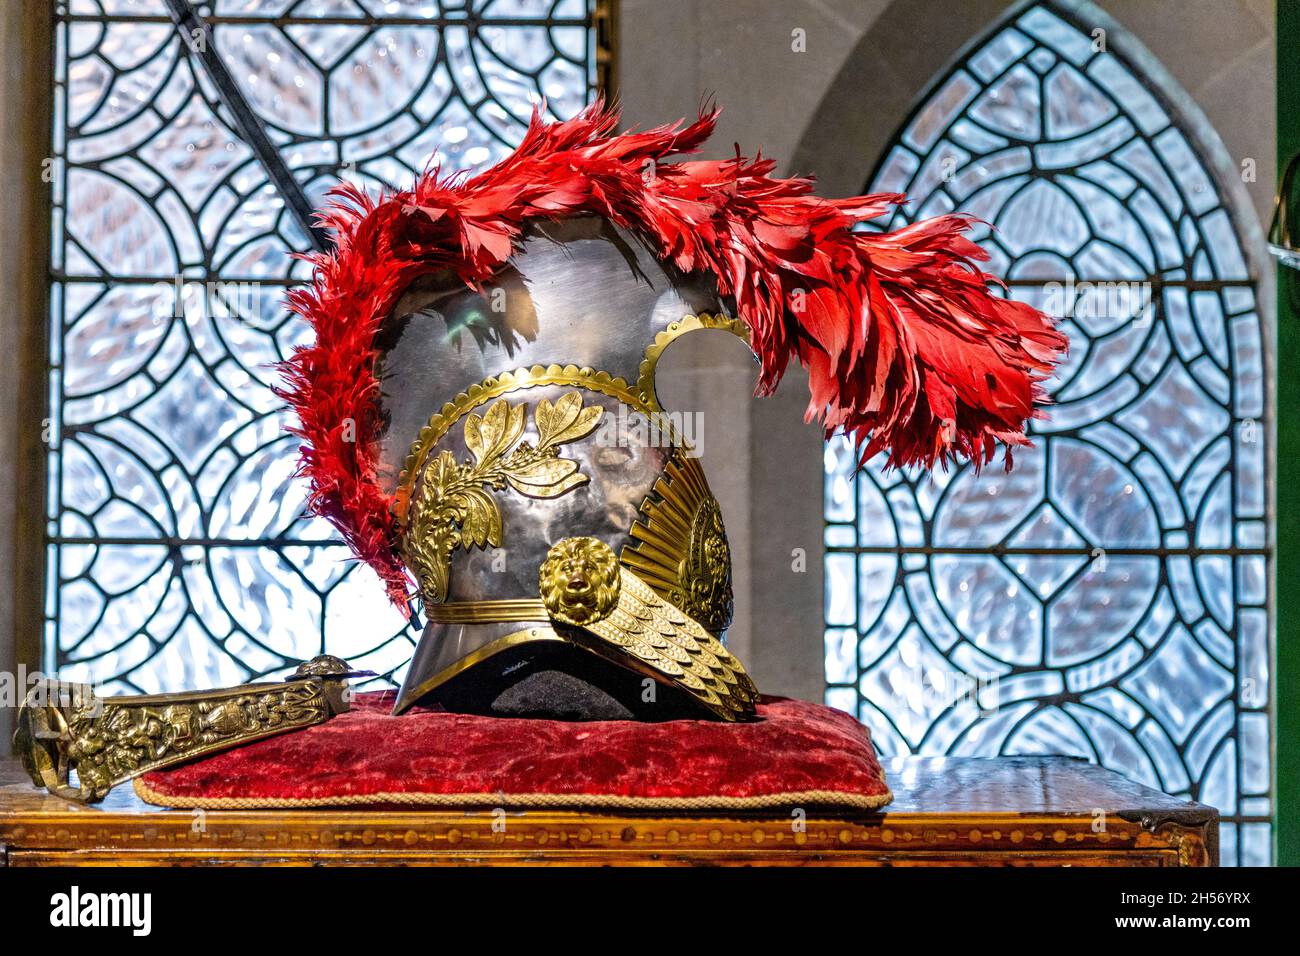 Mittelalterlicher Kavalleriehelm mit goldenen Ornamenten und roten Federn, ausgestellt im Arundel Castle, West Sussex, Großbritannien Stockfoto